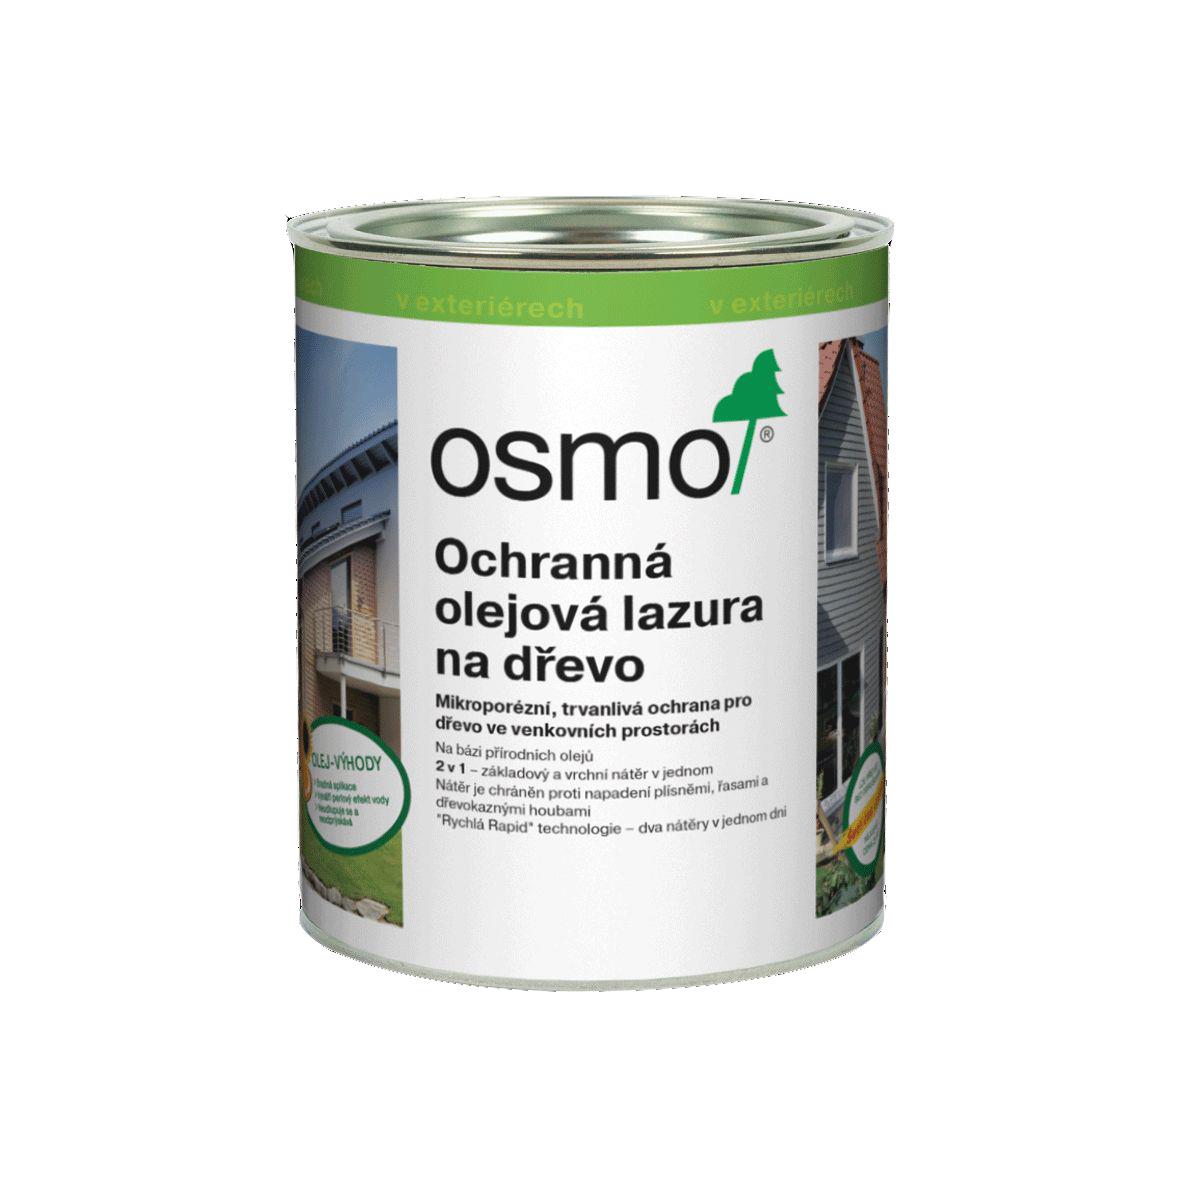 OSMO Ochranná olejová lazura 710 pinie 0,75l